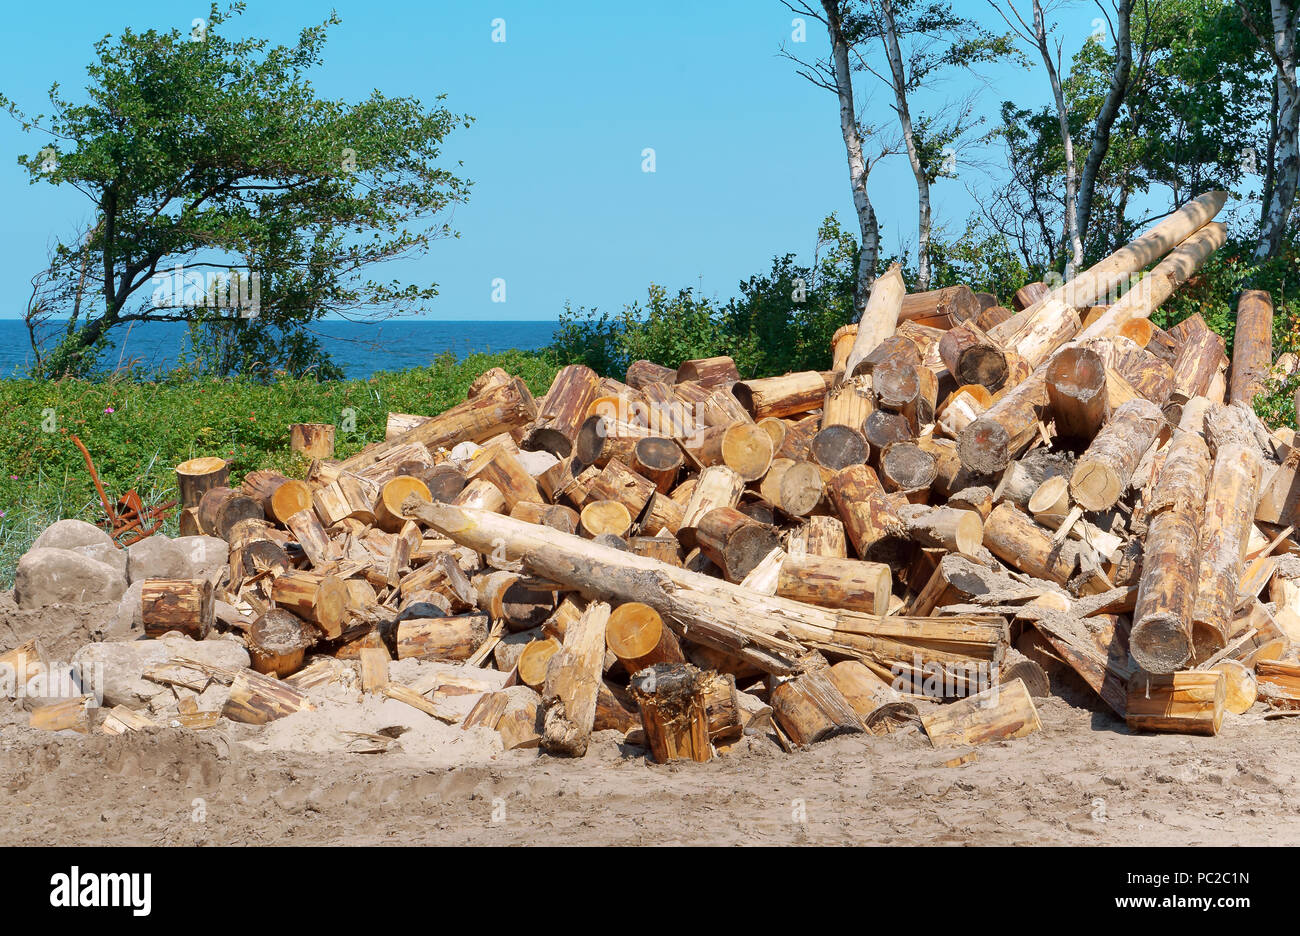 Anmeldung an der Küste, Entwaldung, Bäume gefällt Stockfoto